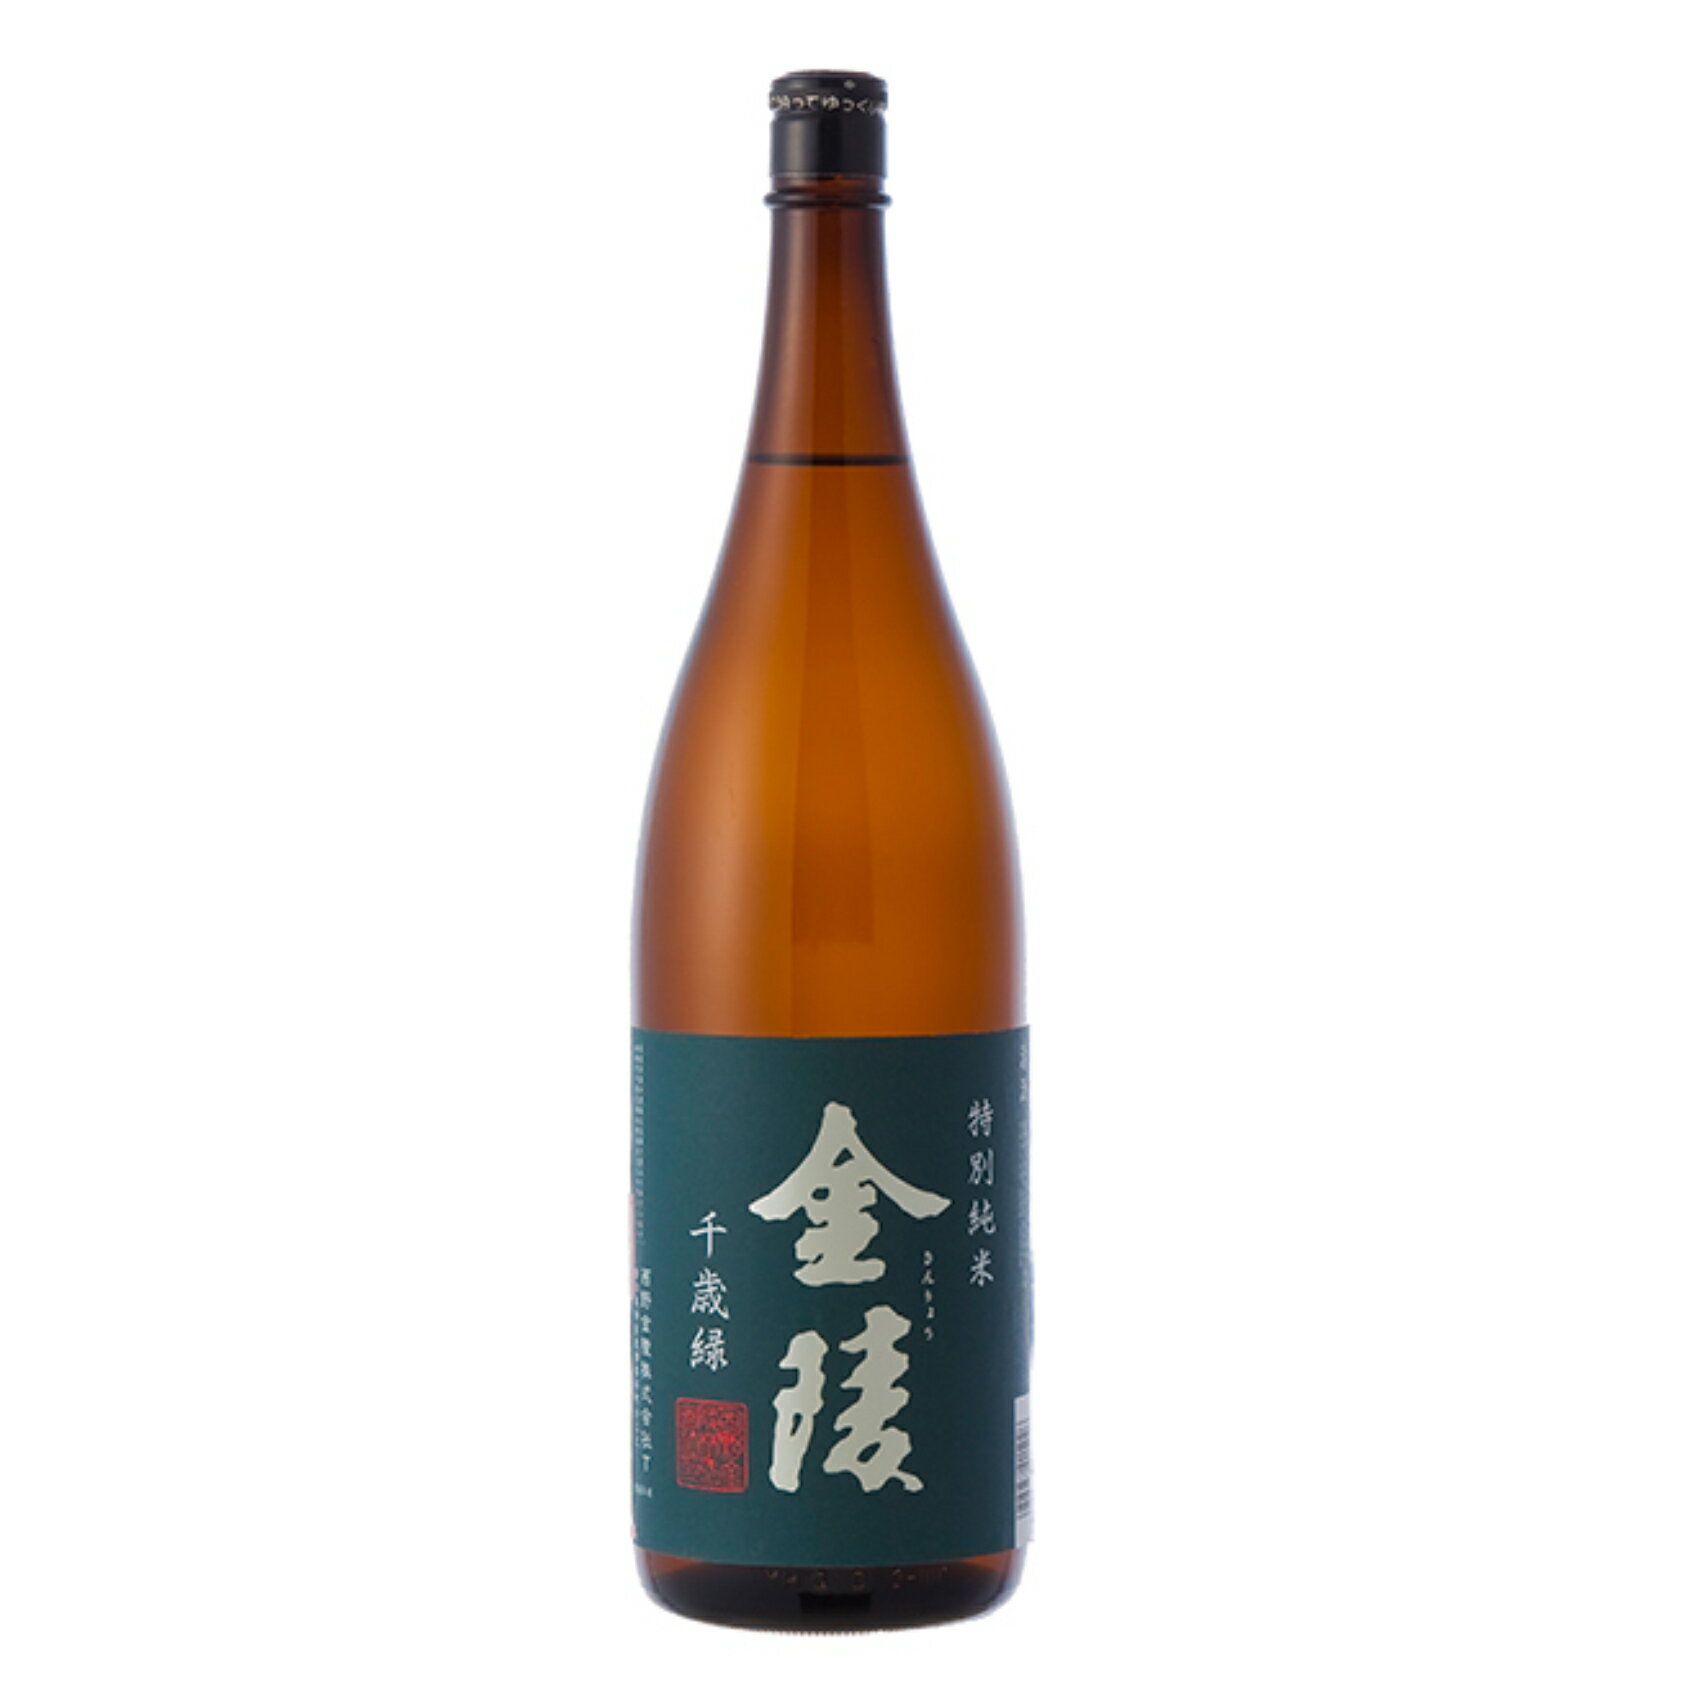 特別純米酒 金陵千歳緑(ちとせみどり) 1800ml